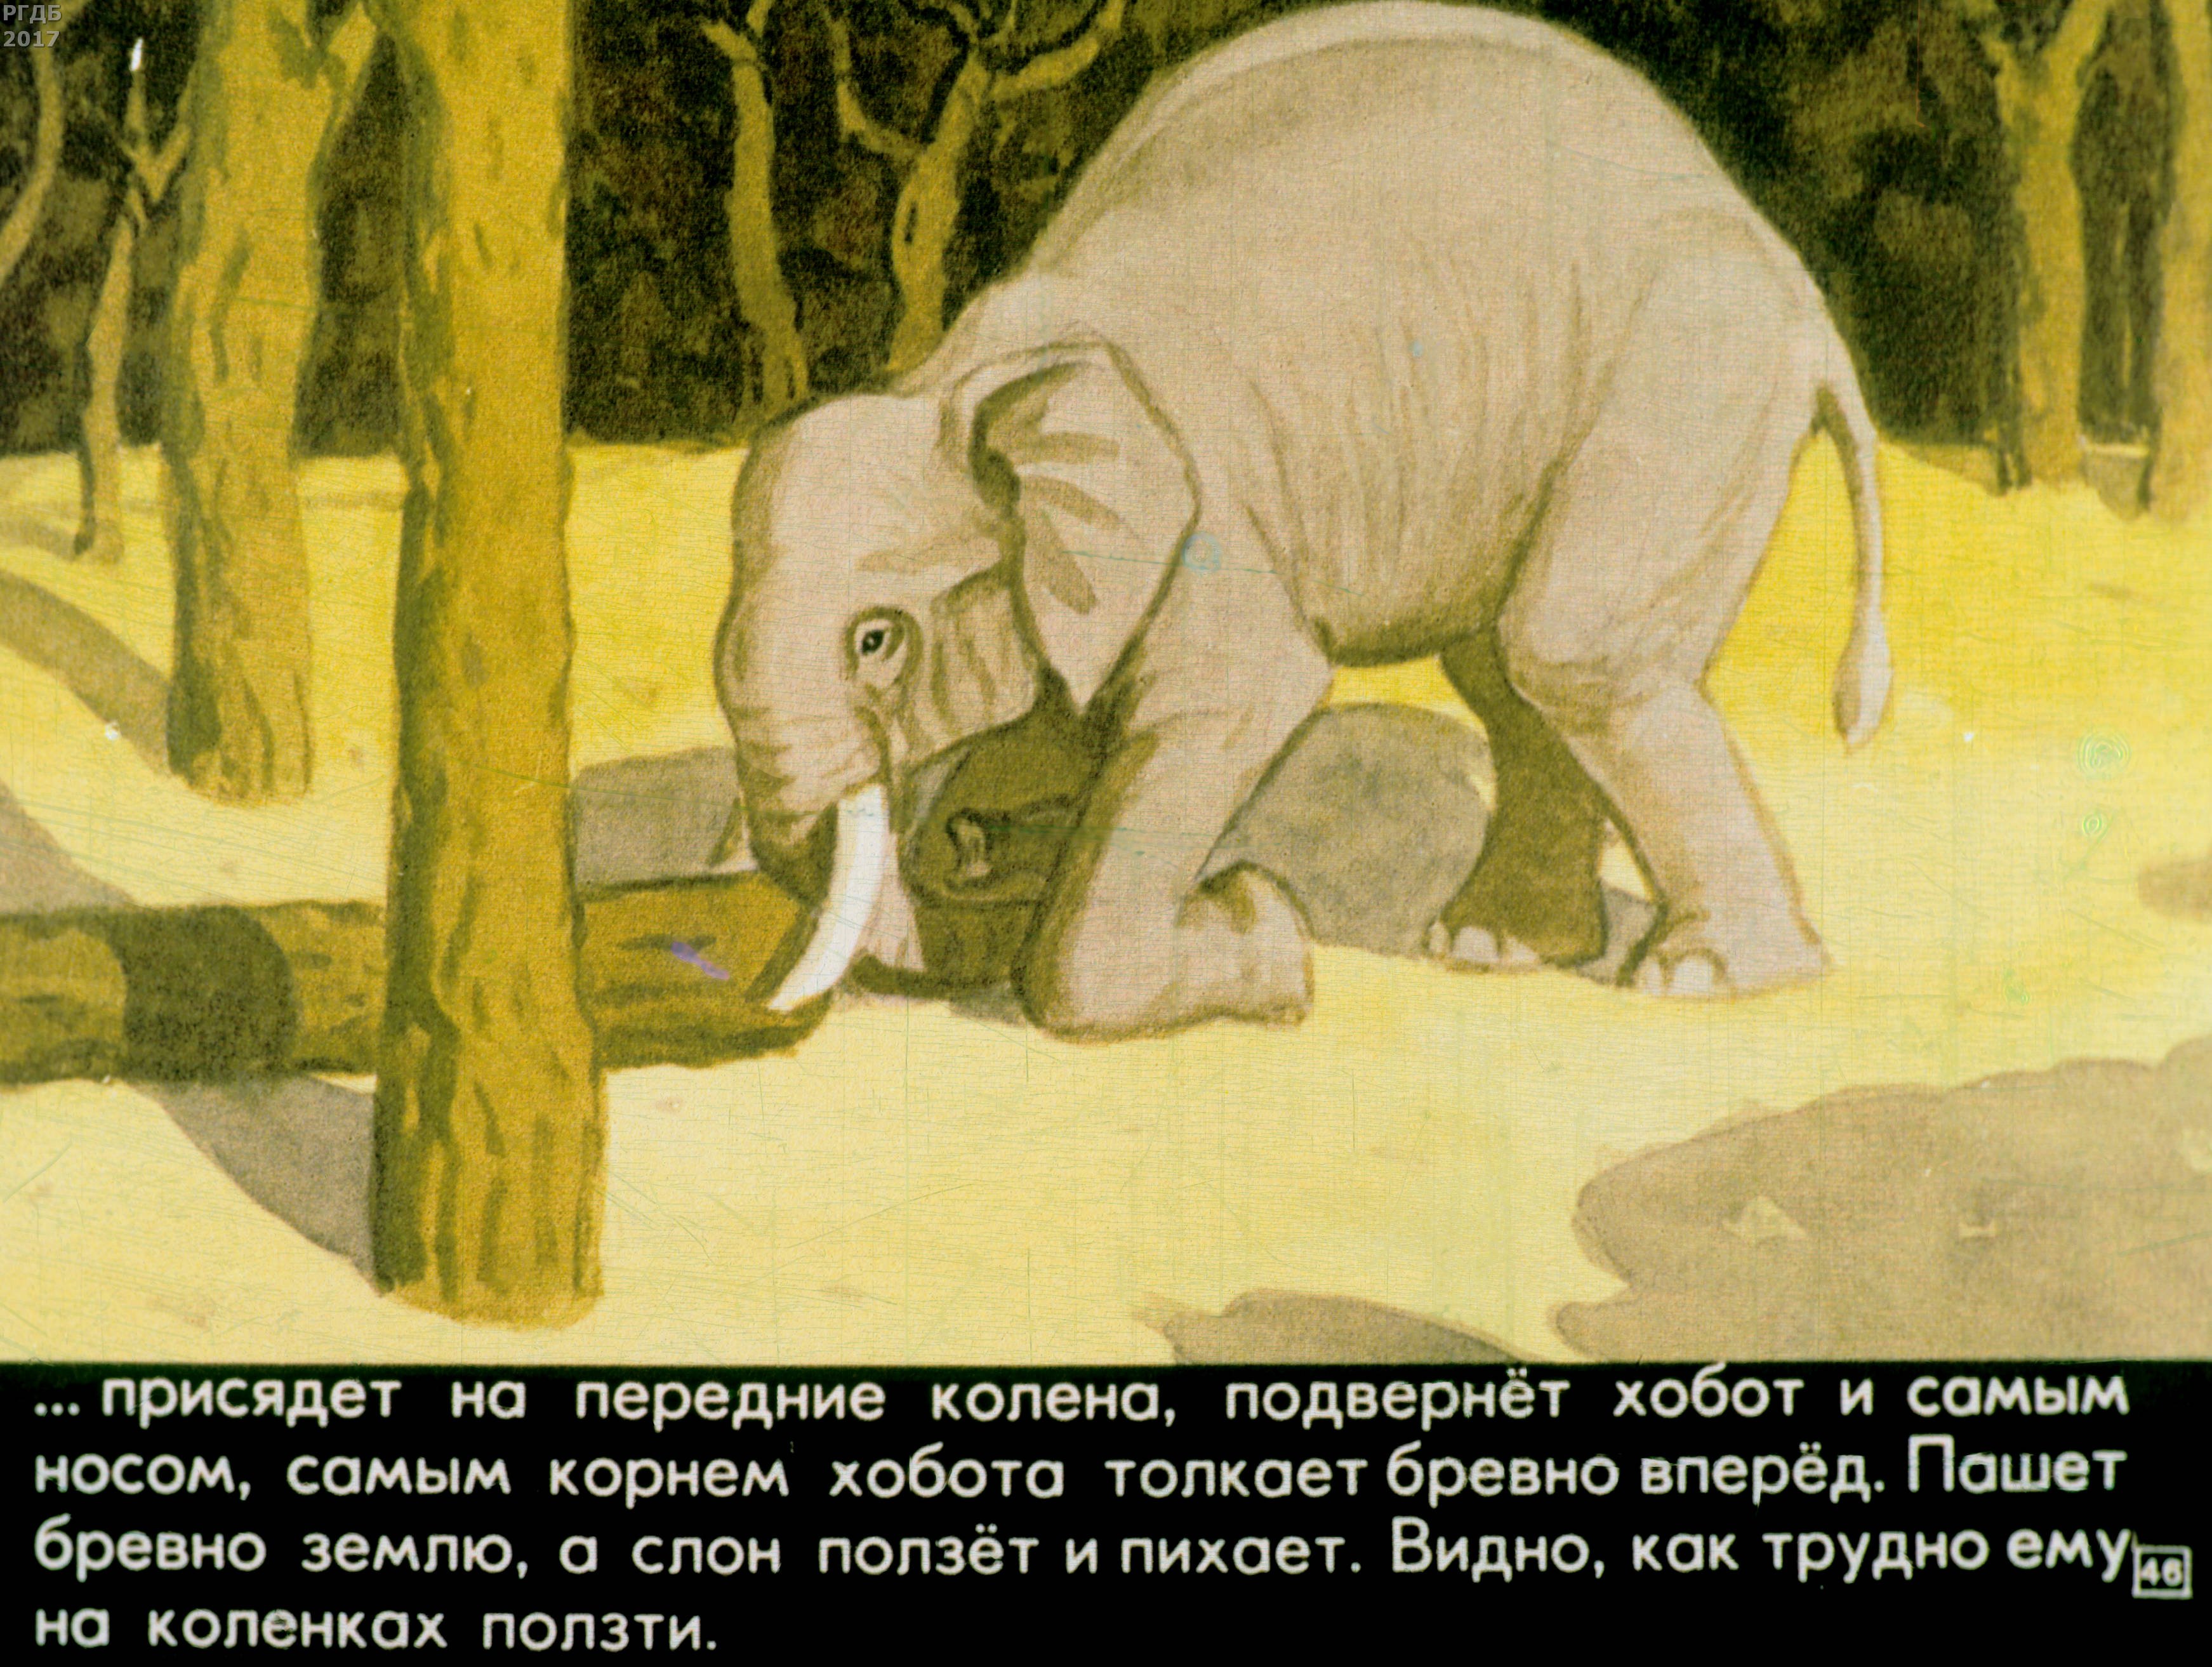 Рассказ про слона Житков. Рассказ Житкова про слона. Слоновые истории